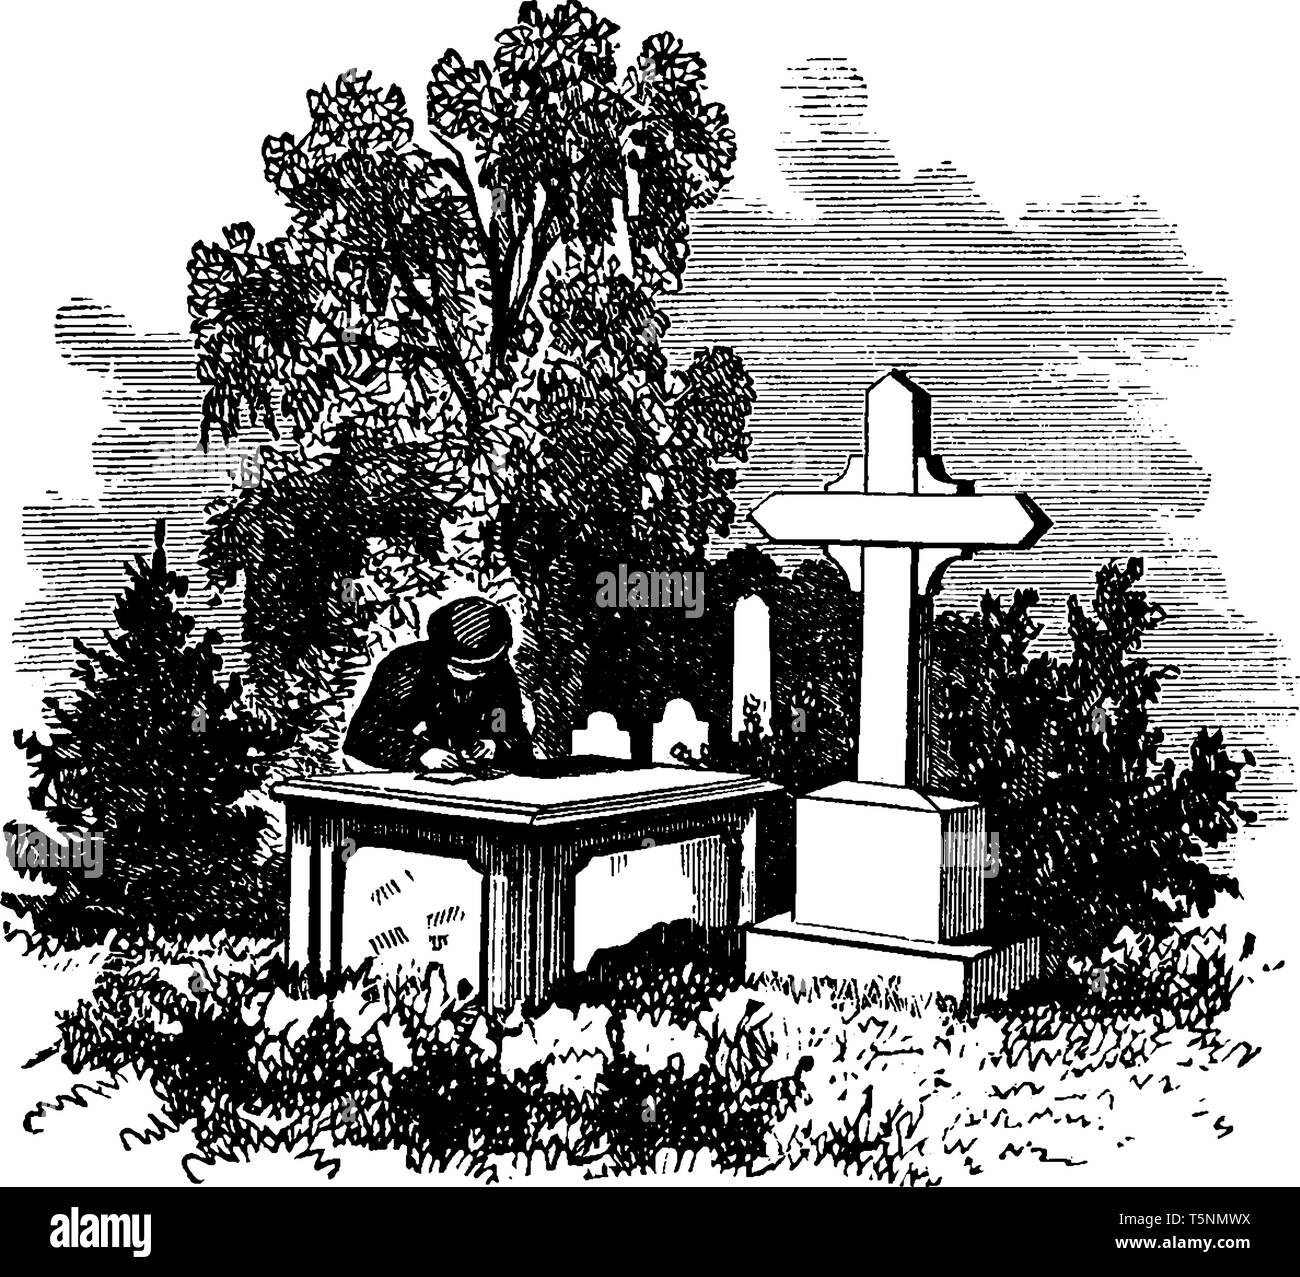 Das Denkmal von Richard Dale, ein Marineoffizier, vintage Strichzeichnung oder Gravur Abbildung. Stock Vektor